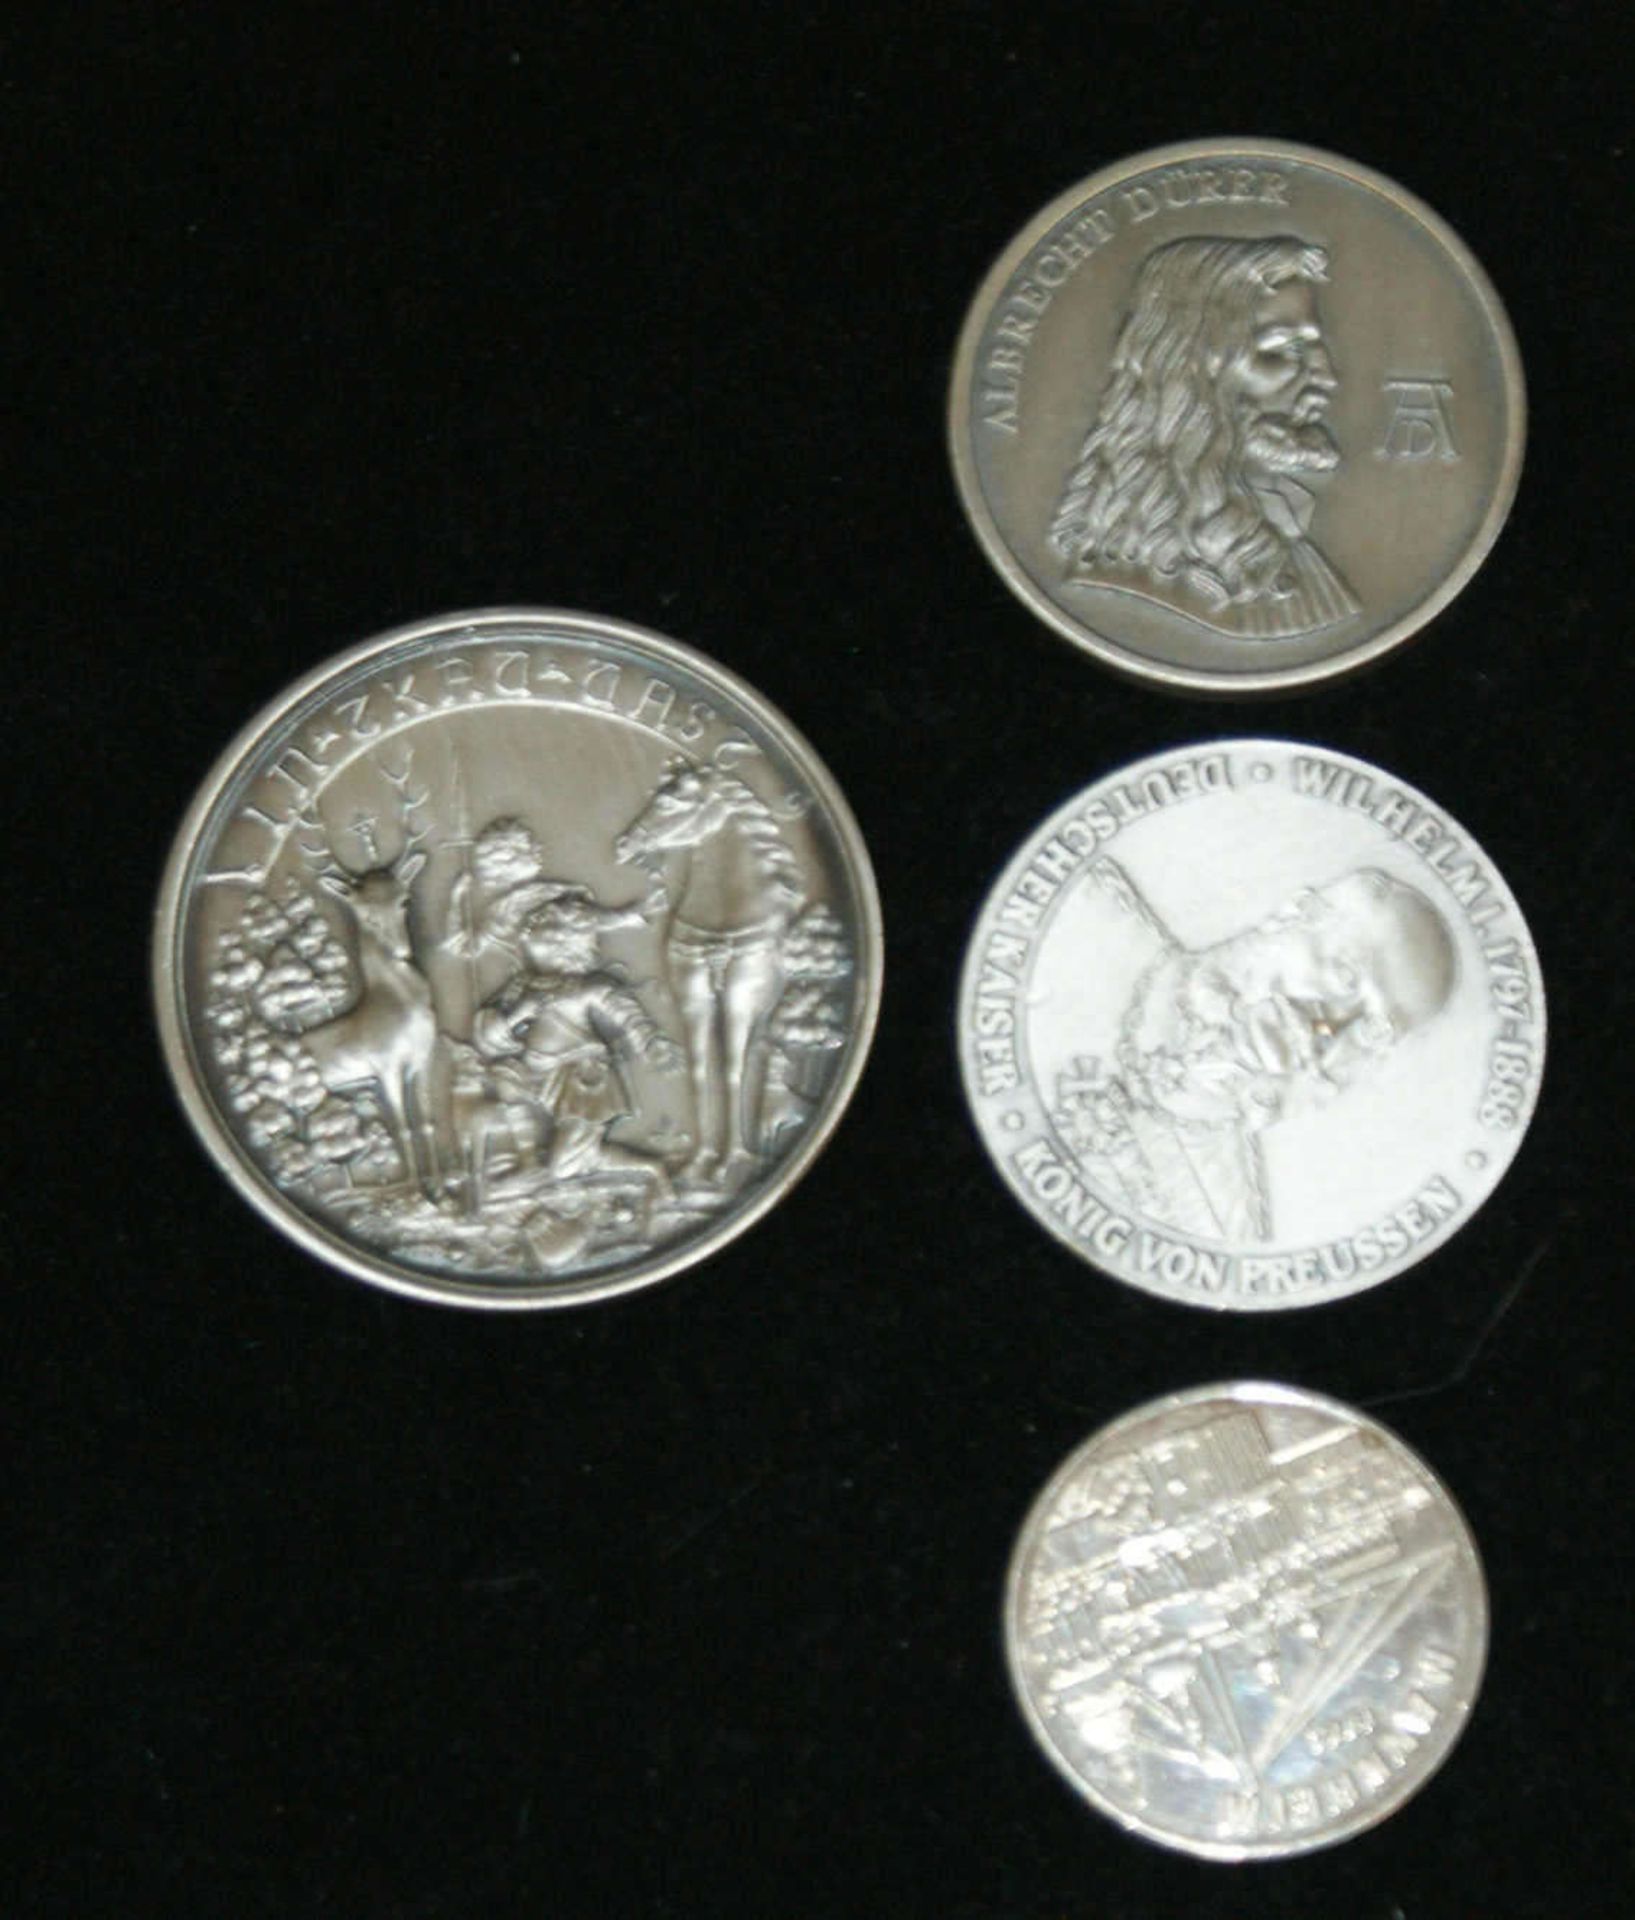 4 Medaillen, versilbert, hochwertige Prägung, dabei Albrecht Dürer, etc. - Bild 2 aus 2